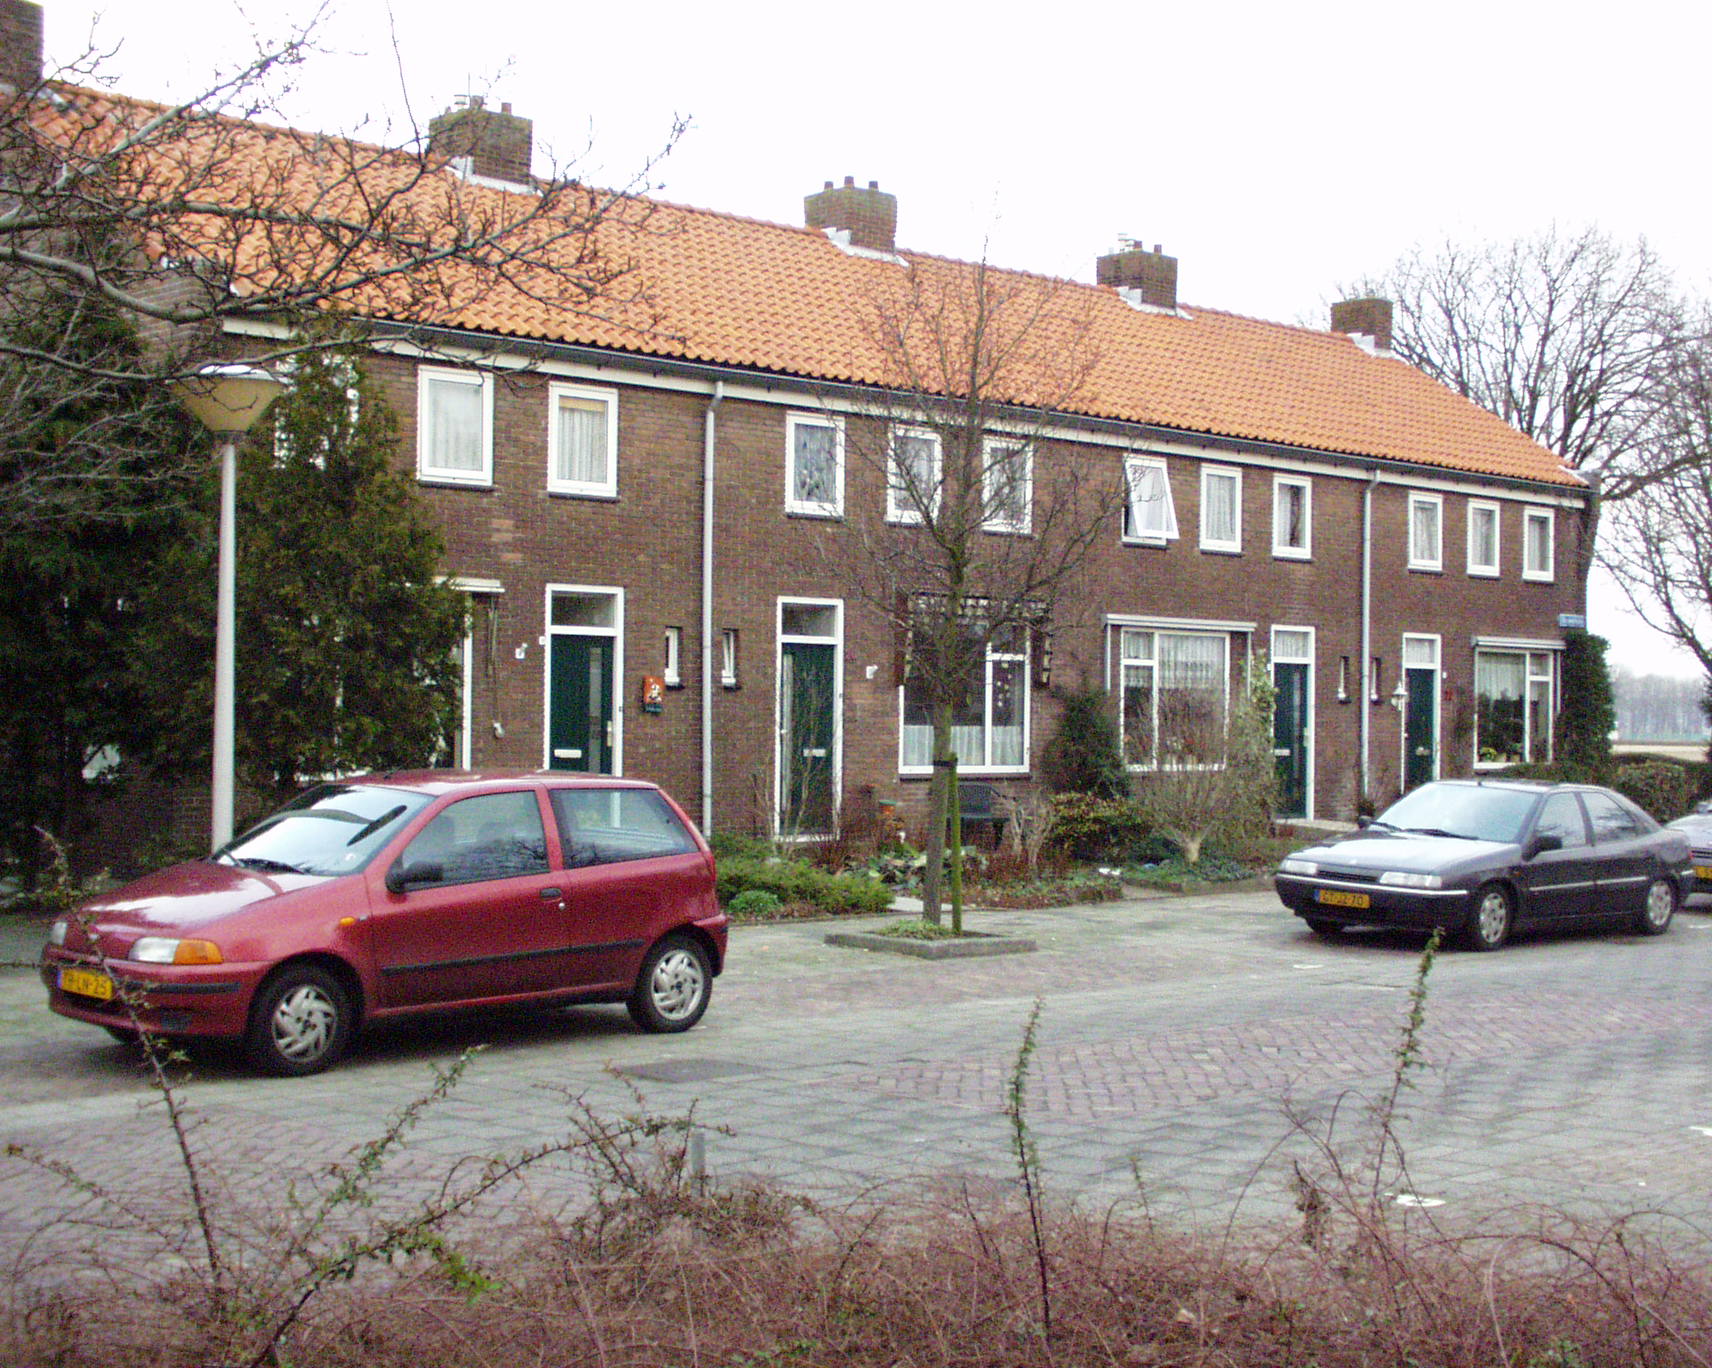 Engelplein 5, 2161 CL Lisse, Nederland